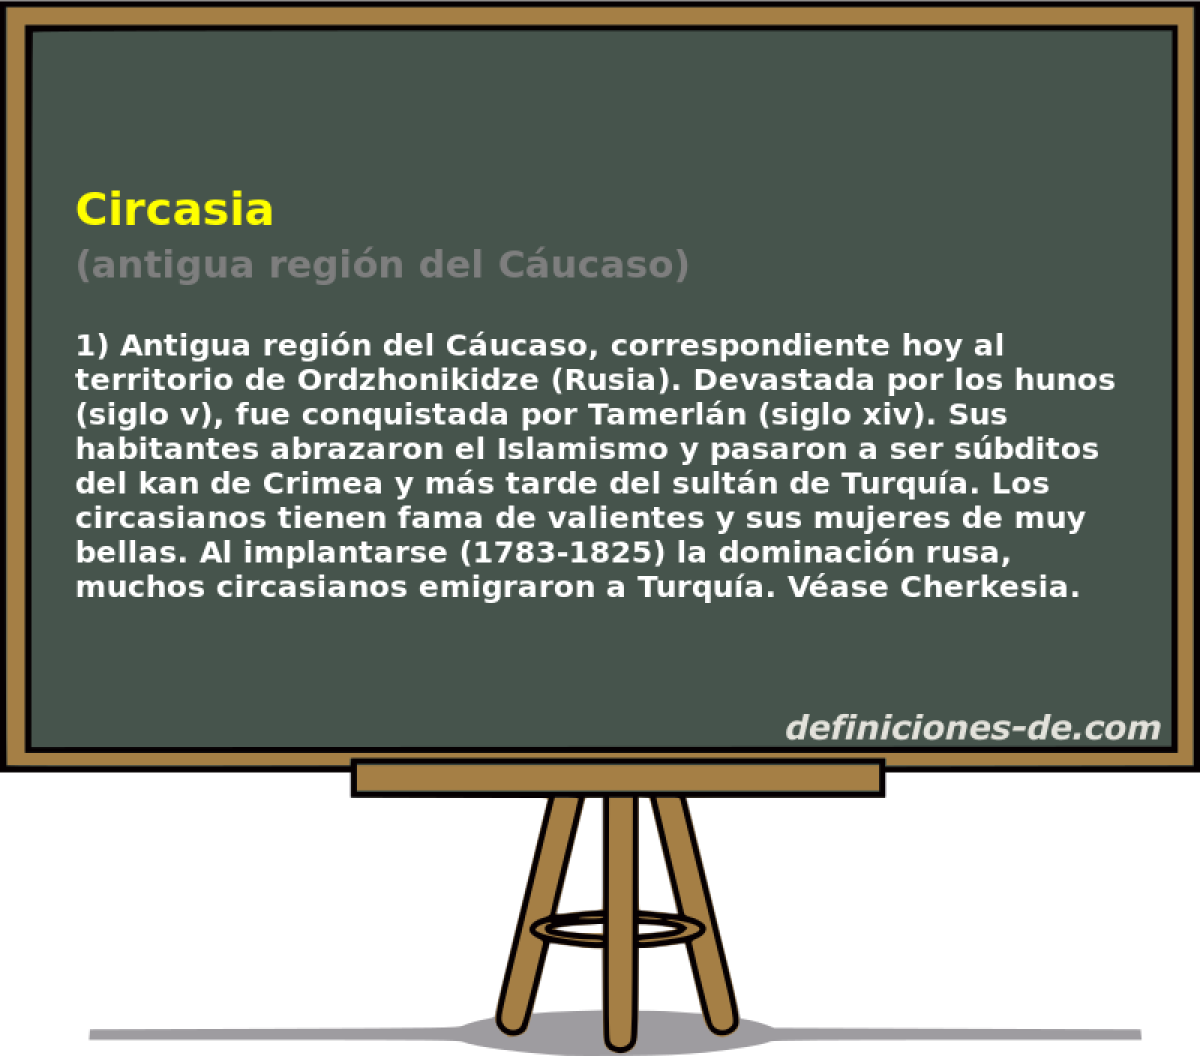 Circasia (antigua regin del Cucaso)